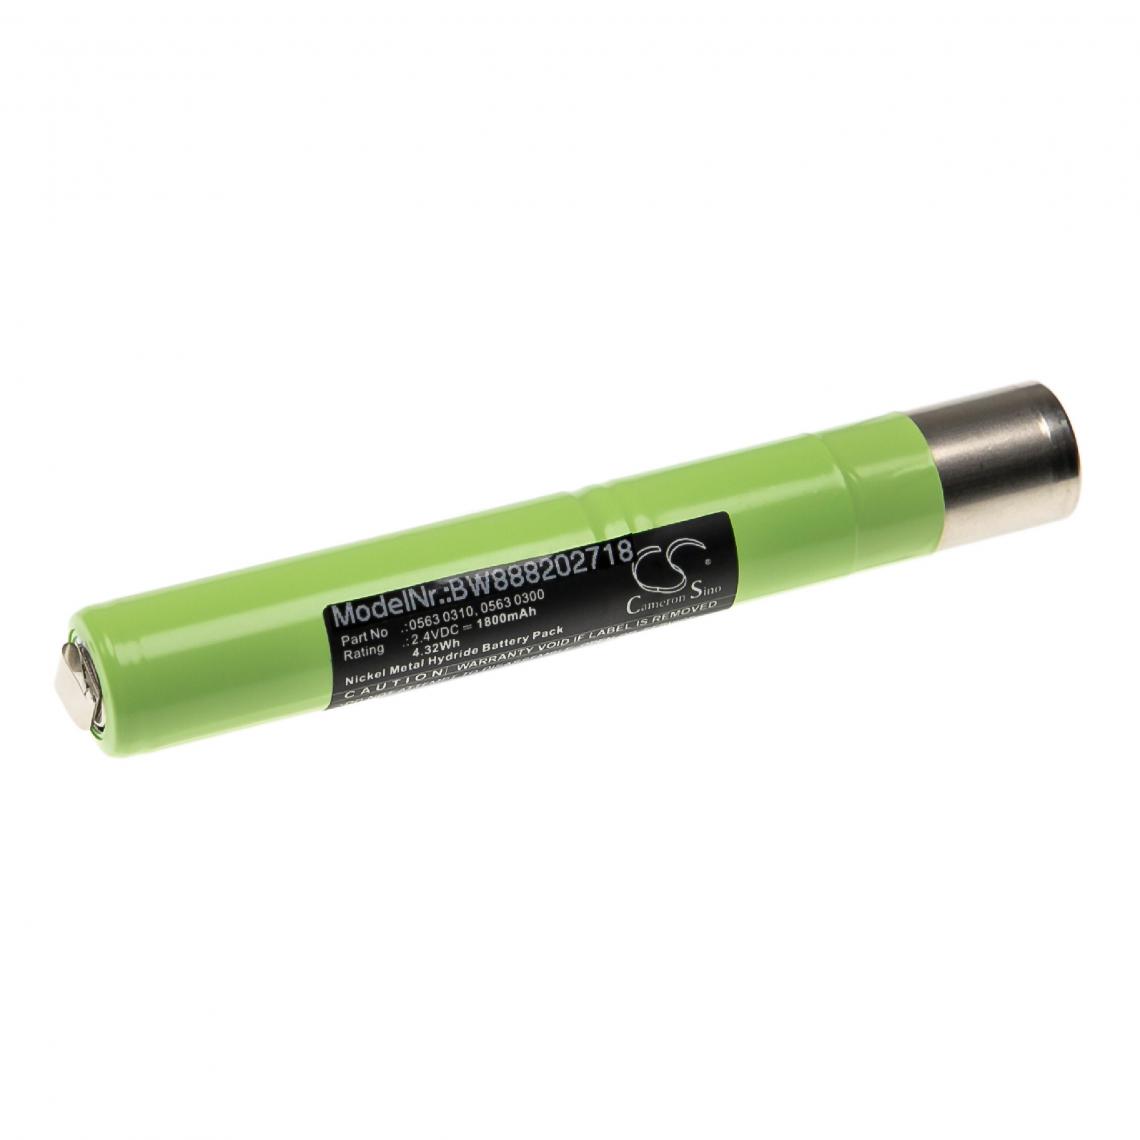 Vhbw - vhbw Batterie compatible avec Testo 300 L, 300 M, 300 XL outil de mesure (1800mAh, 2,4V, NiMH) - Piles rechargeables